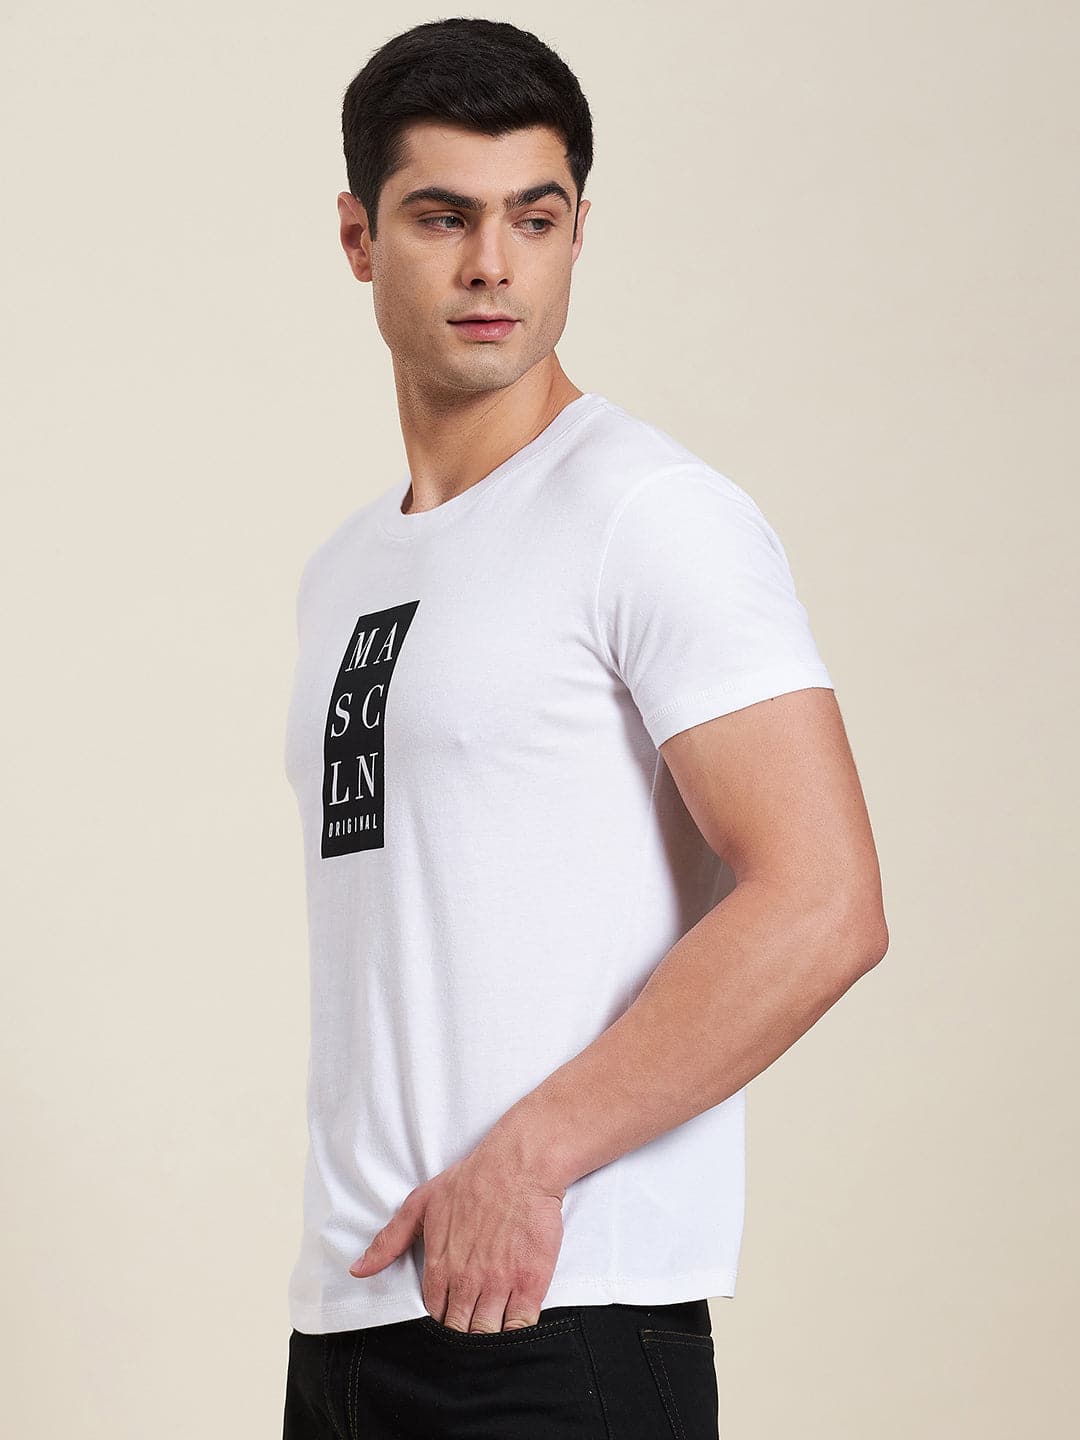 Men's White Vertical MASCLN Slim Fit T-Shirt - LYUSH-MASCLN